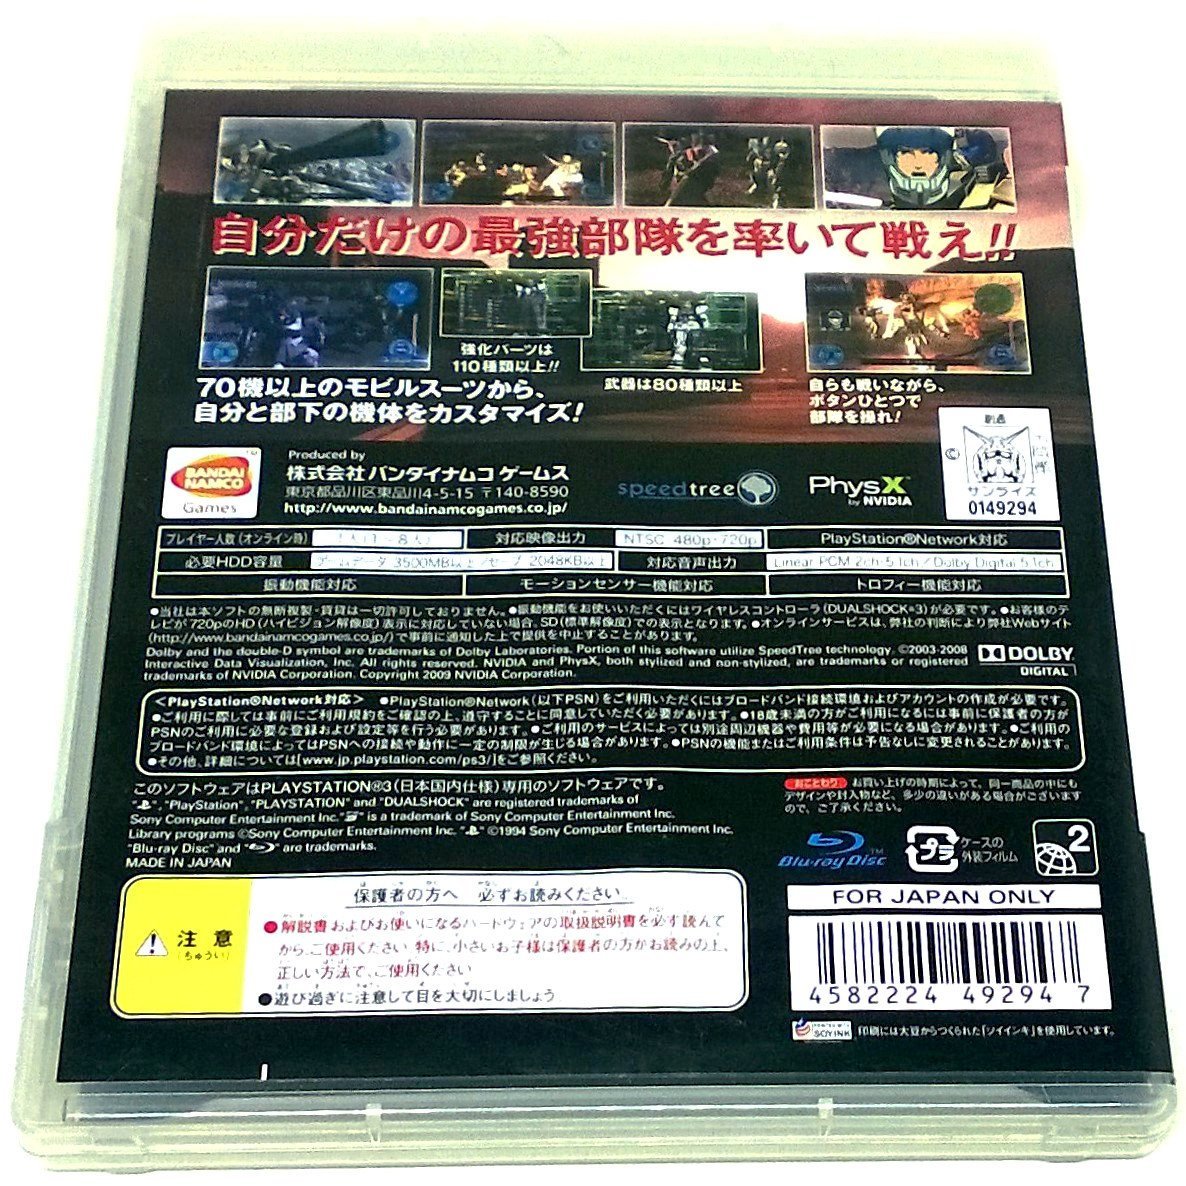 Game - Kidou Senshi Gundam Senki Record U.C. 0081